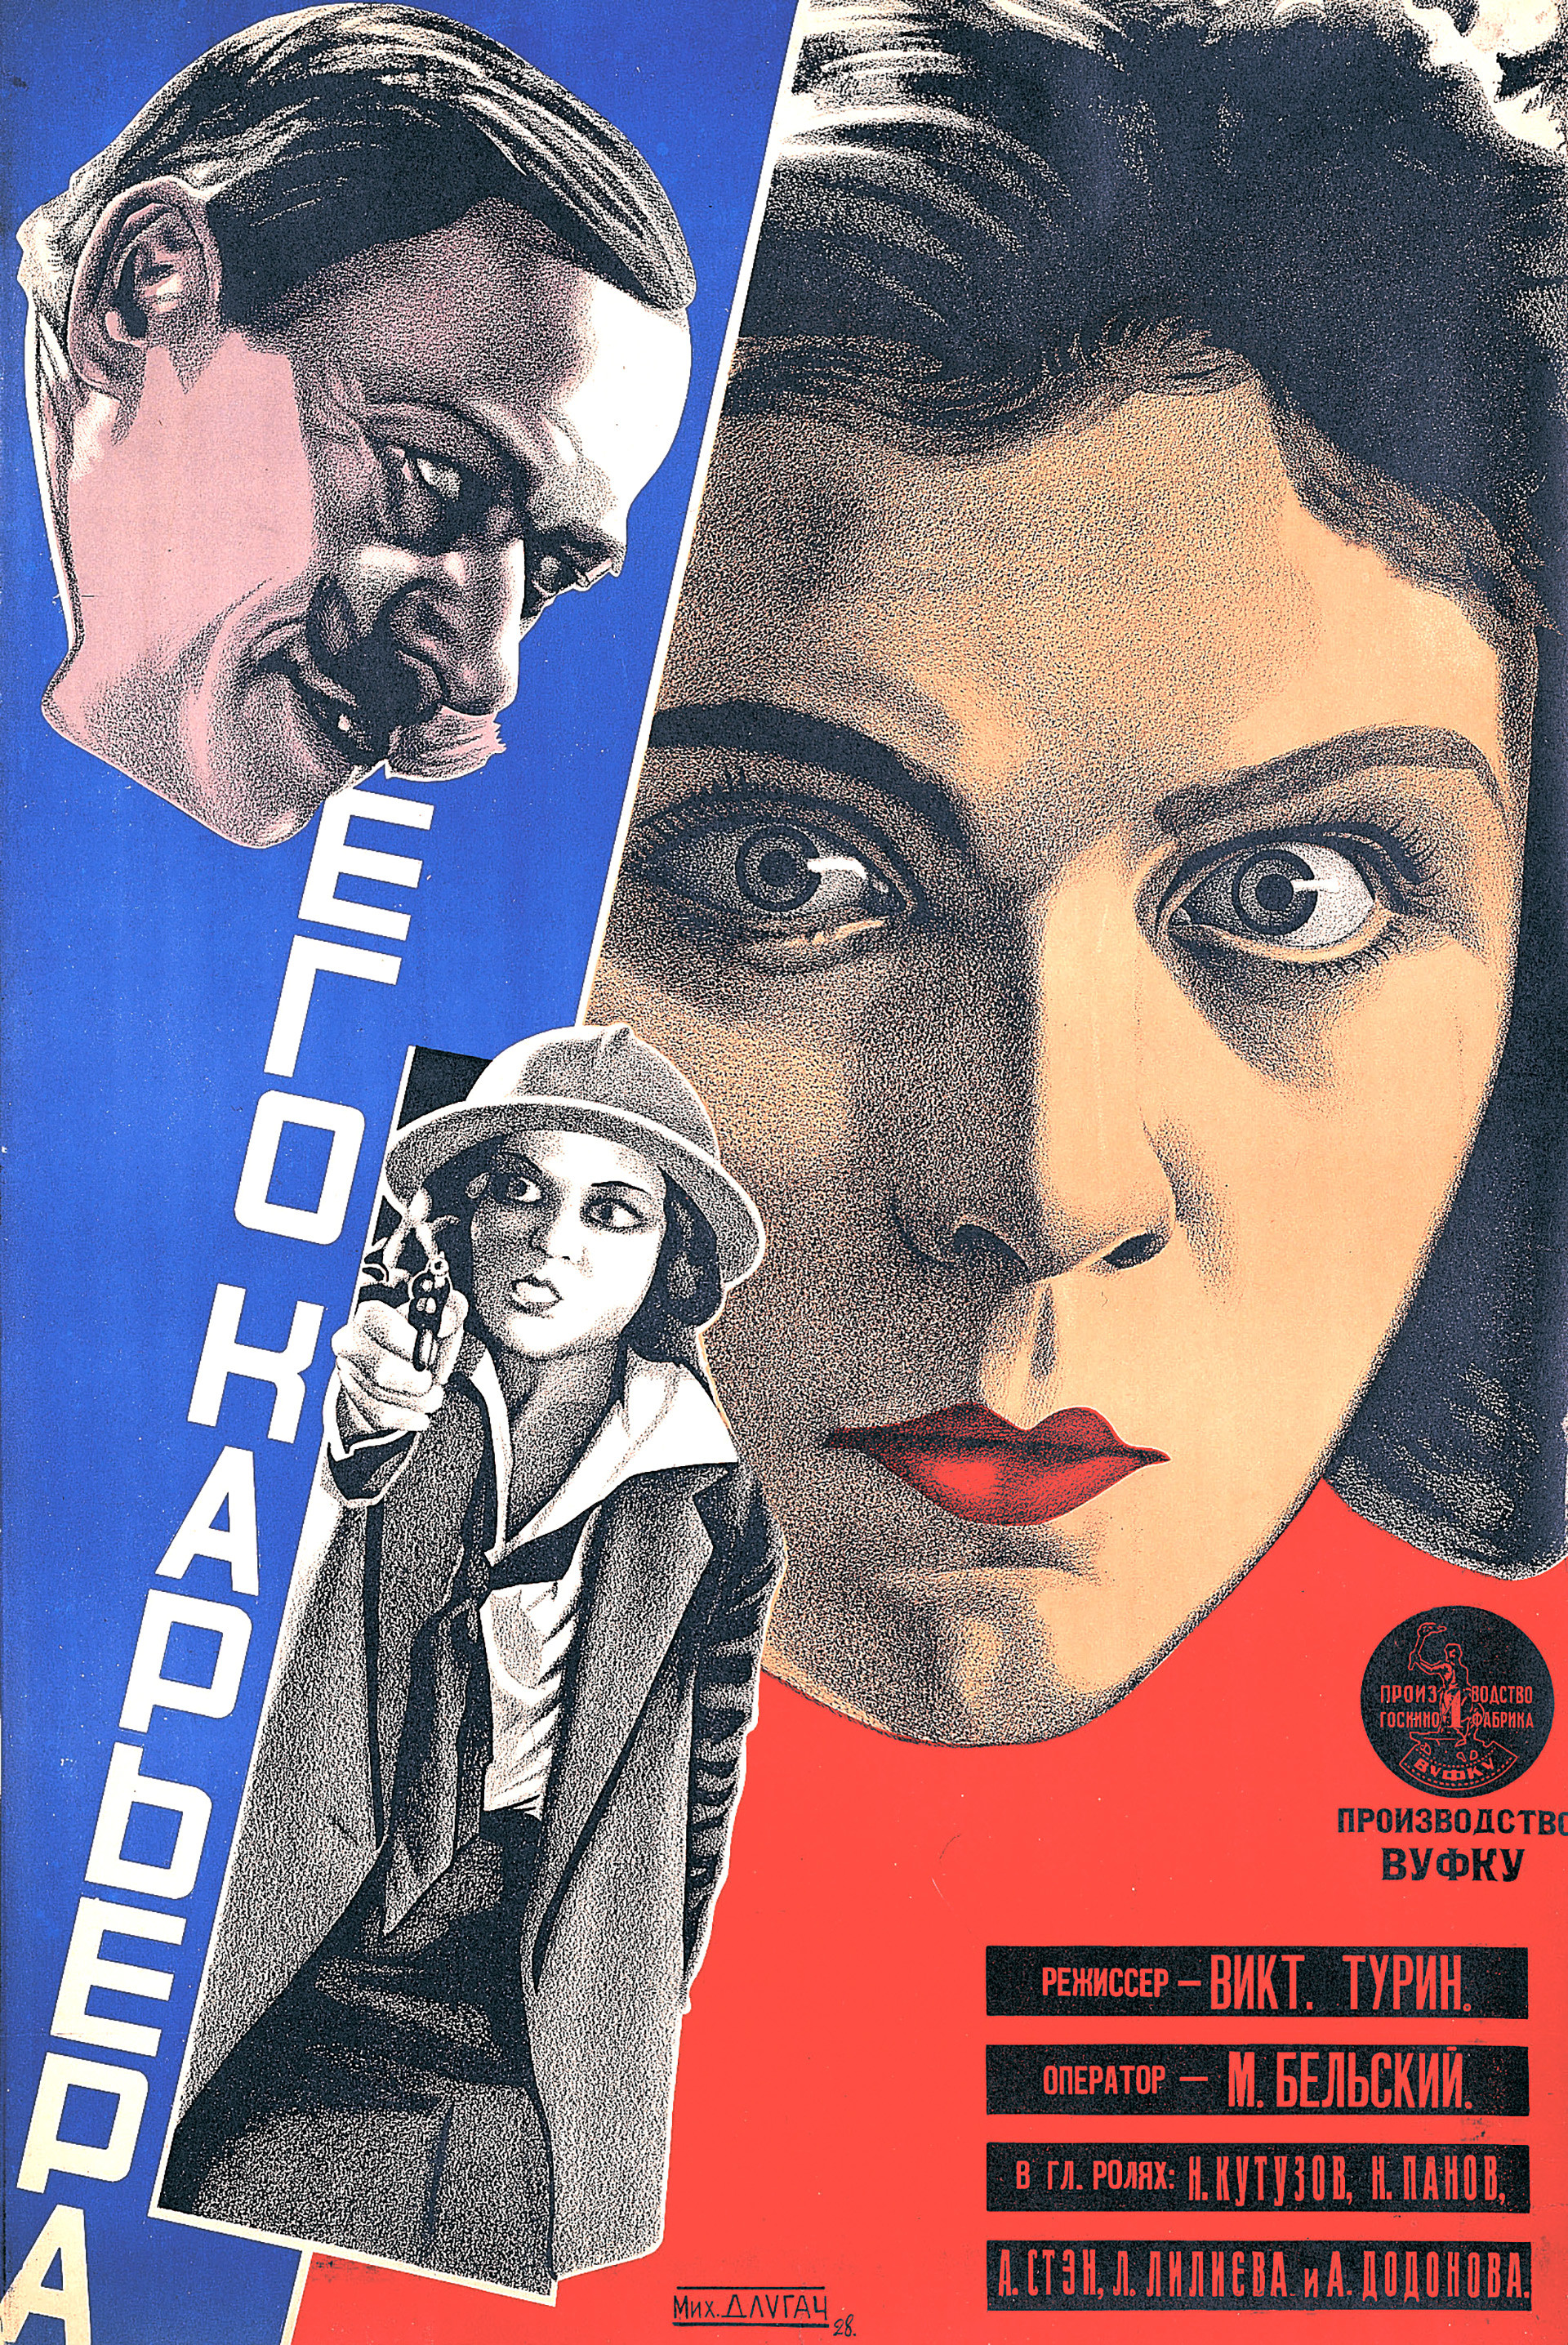 Mikhaïl Dlougatch, affiche pour Sa carrière, 1928